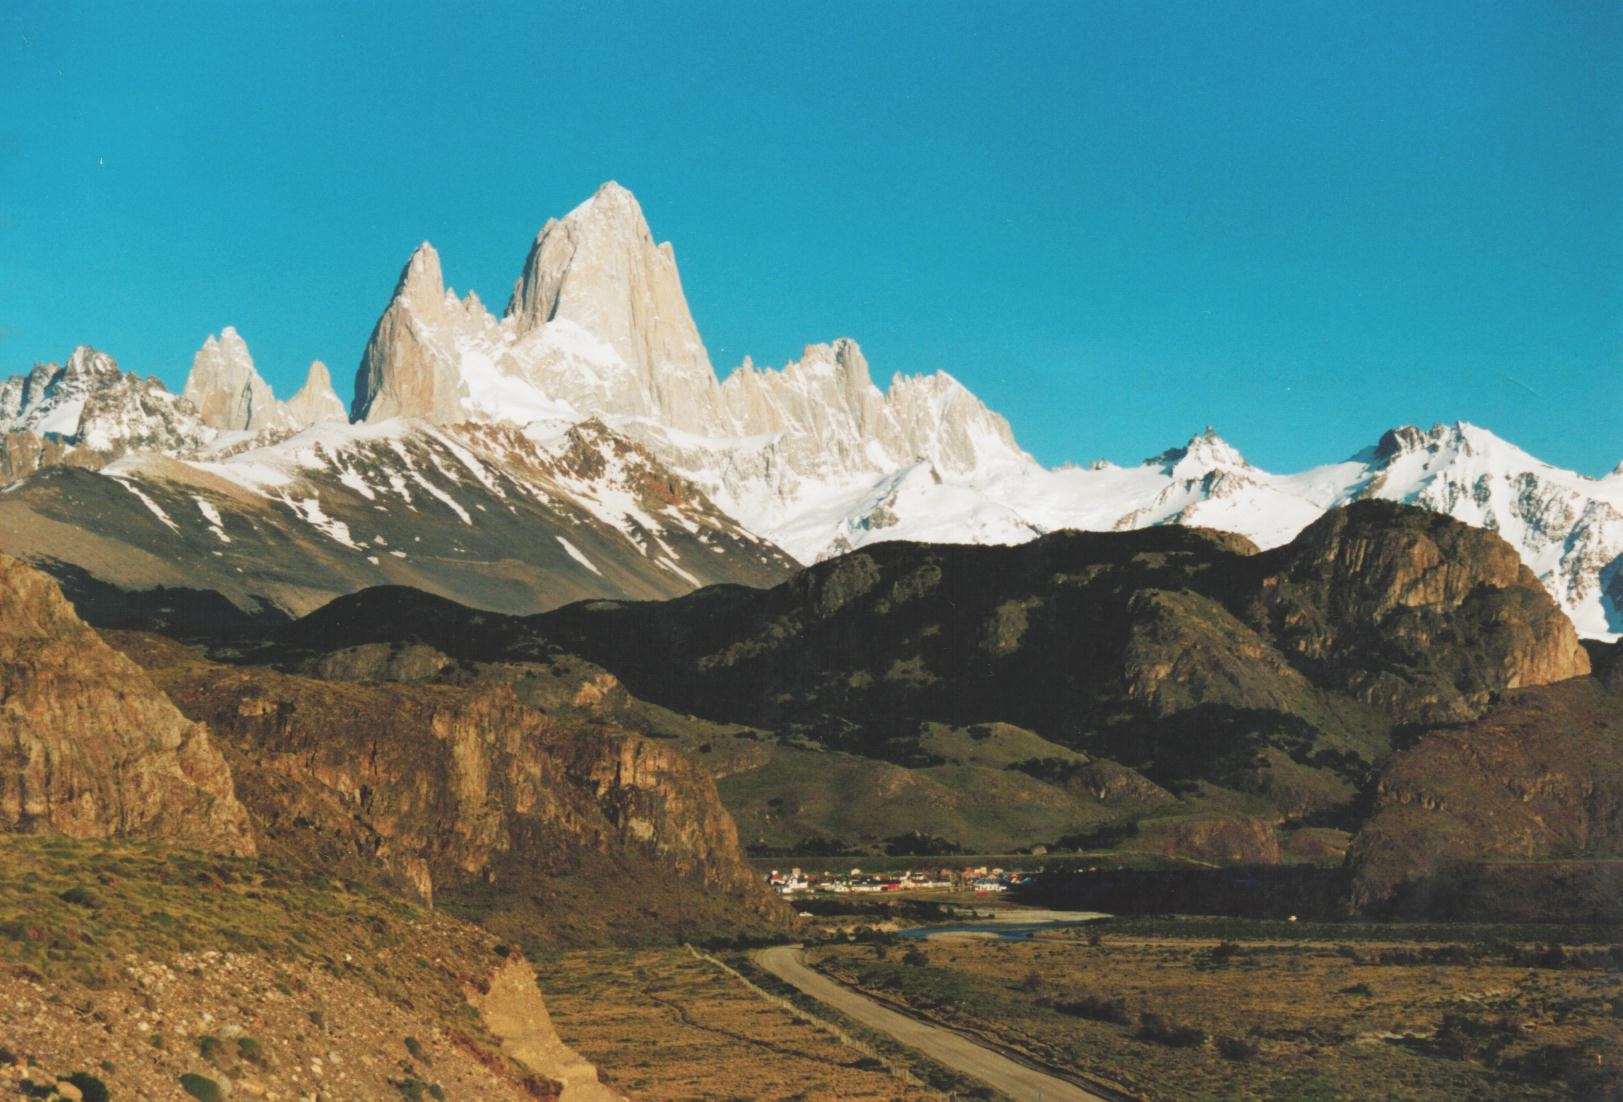 Mt Fitzroy near El Chalten Argentina